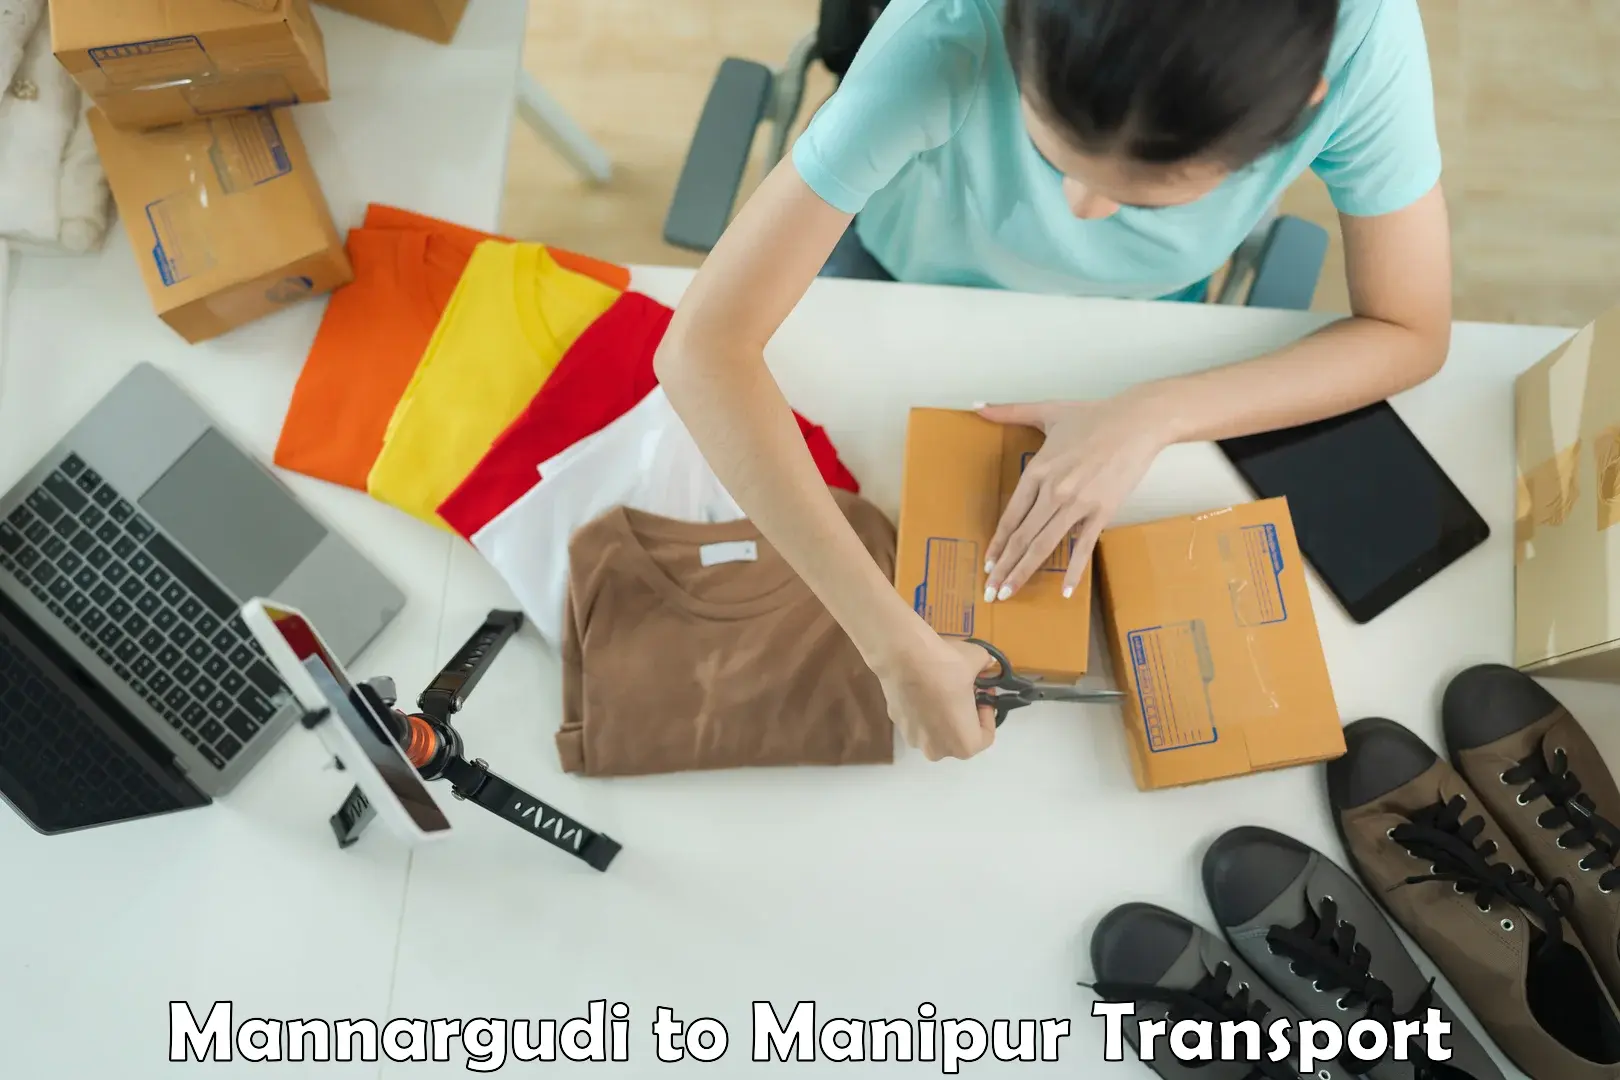 Online transport service Mannargudi to Imphal